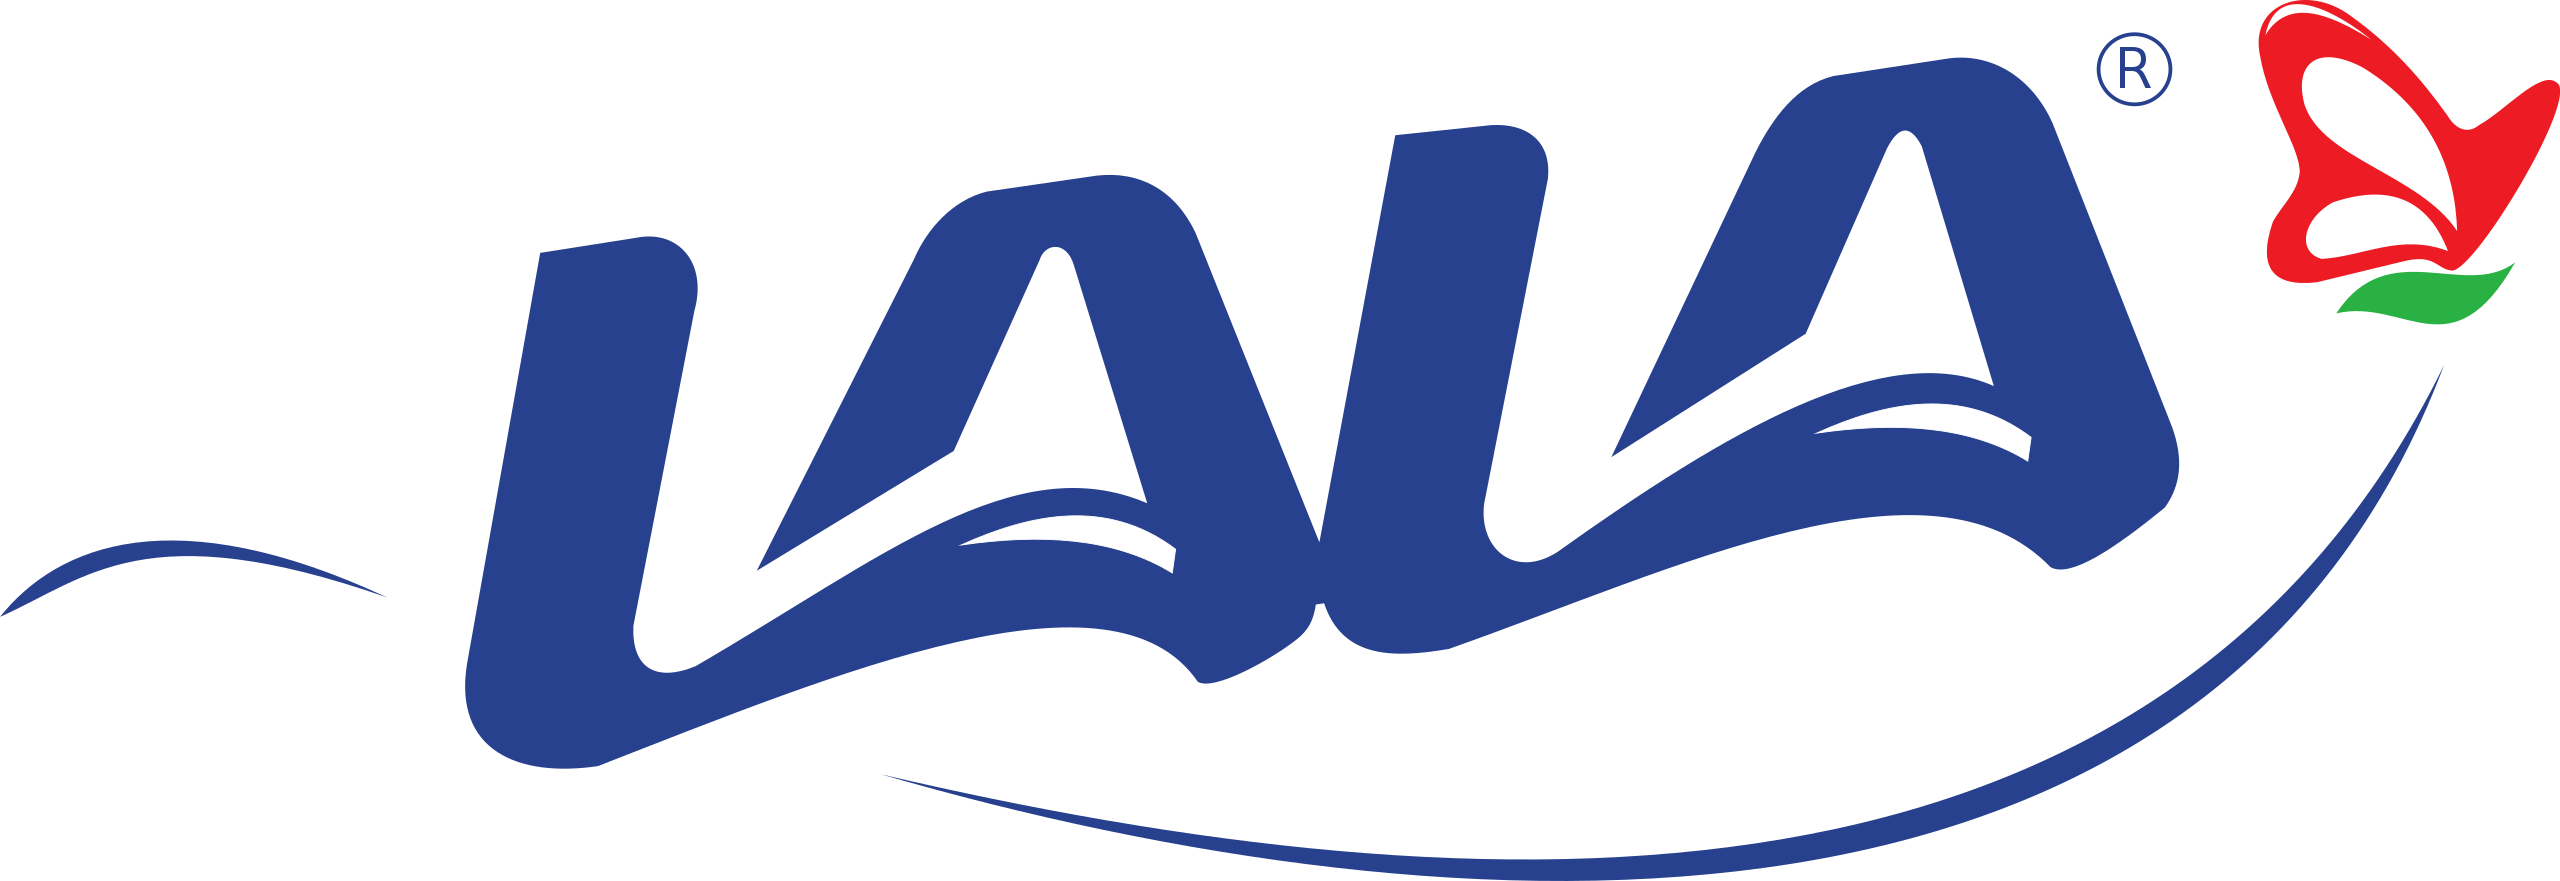 Logo_de_Grupo_Lala.svg